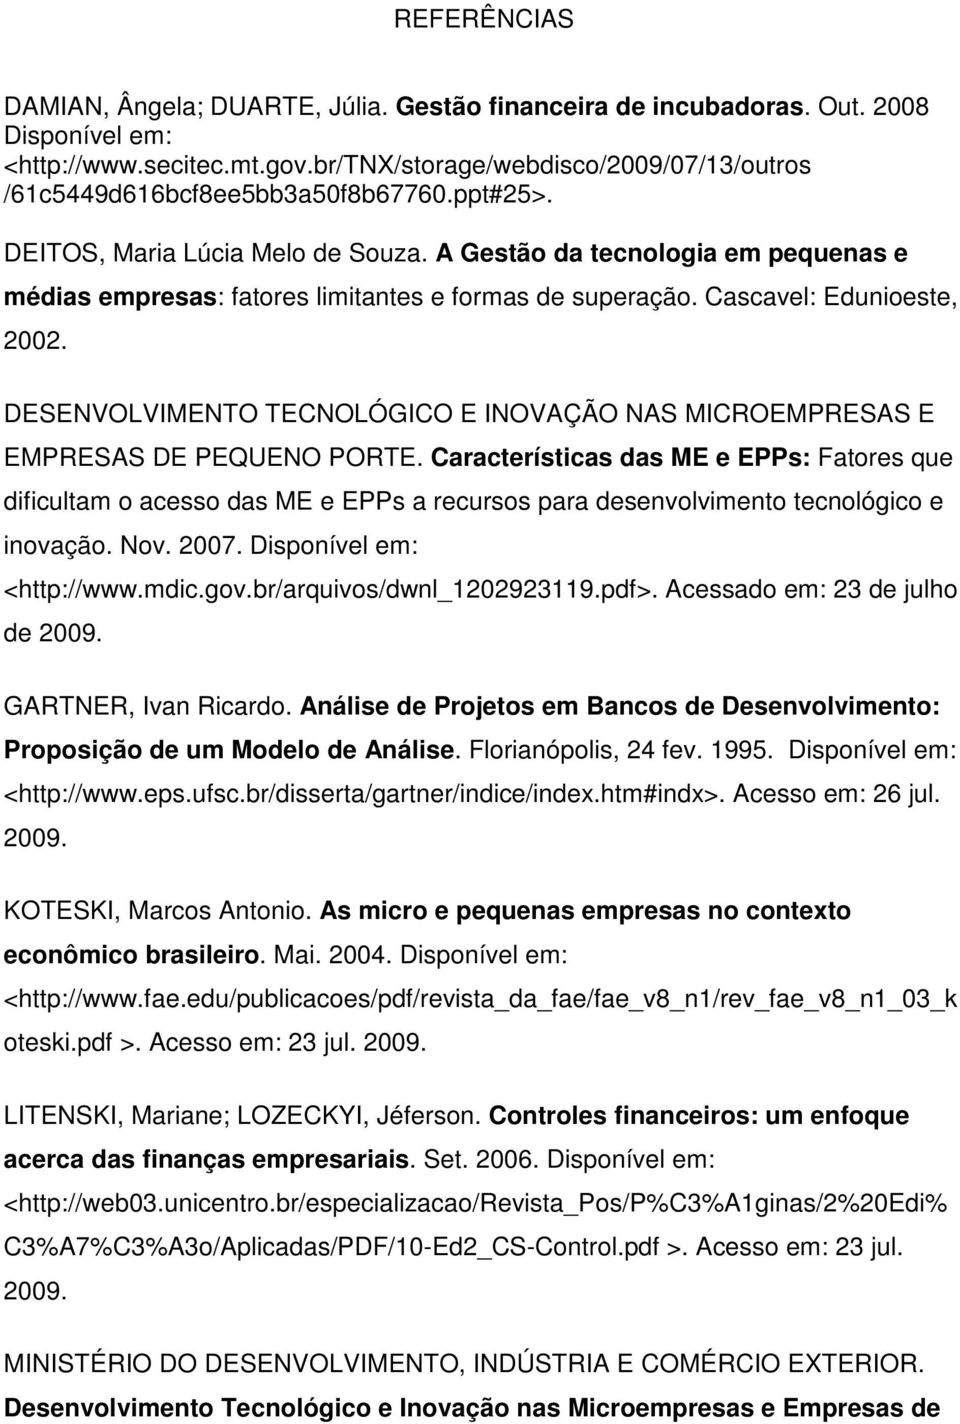 A Gestão da tecnologia em pequenas e médias empresas: fatores limitantes e formas de superação. Cascavel: Edunioeste, 2002.